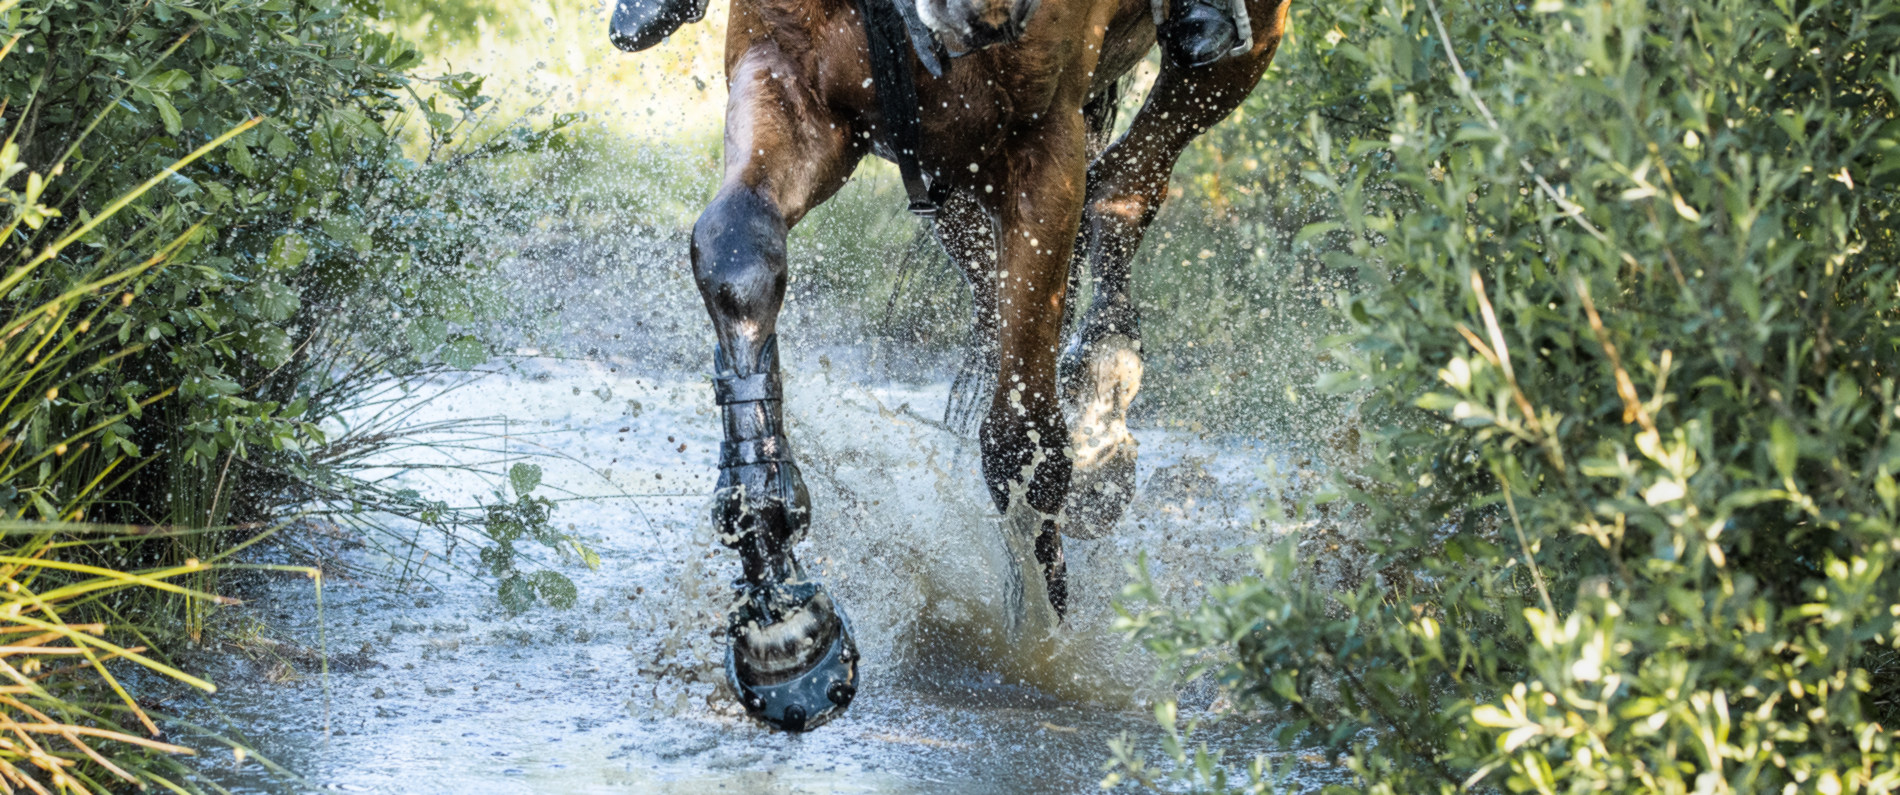 Pferd mit Hufschuhen läuft durch spritzendes Wasser